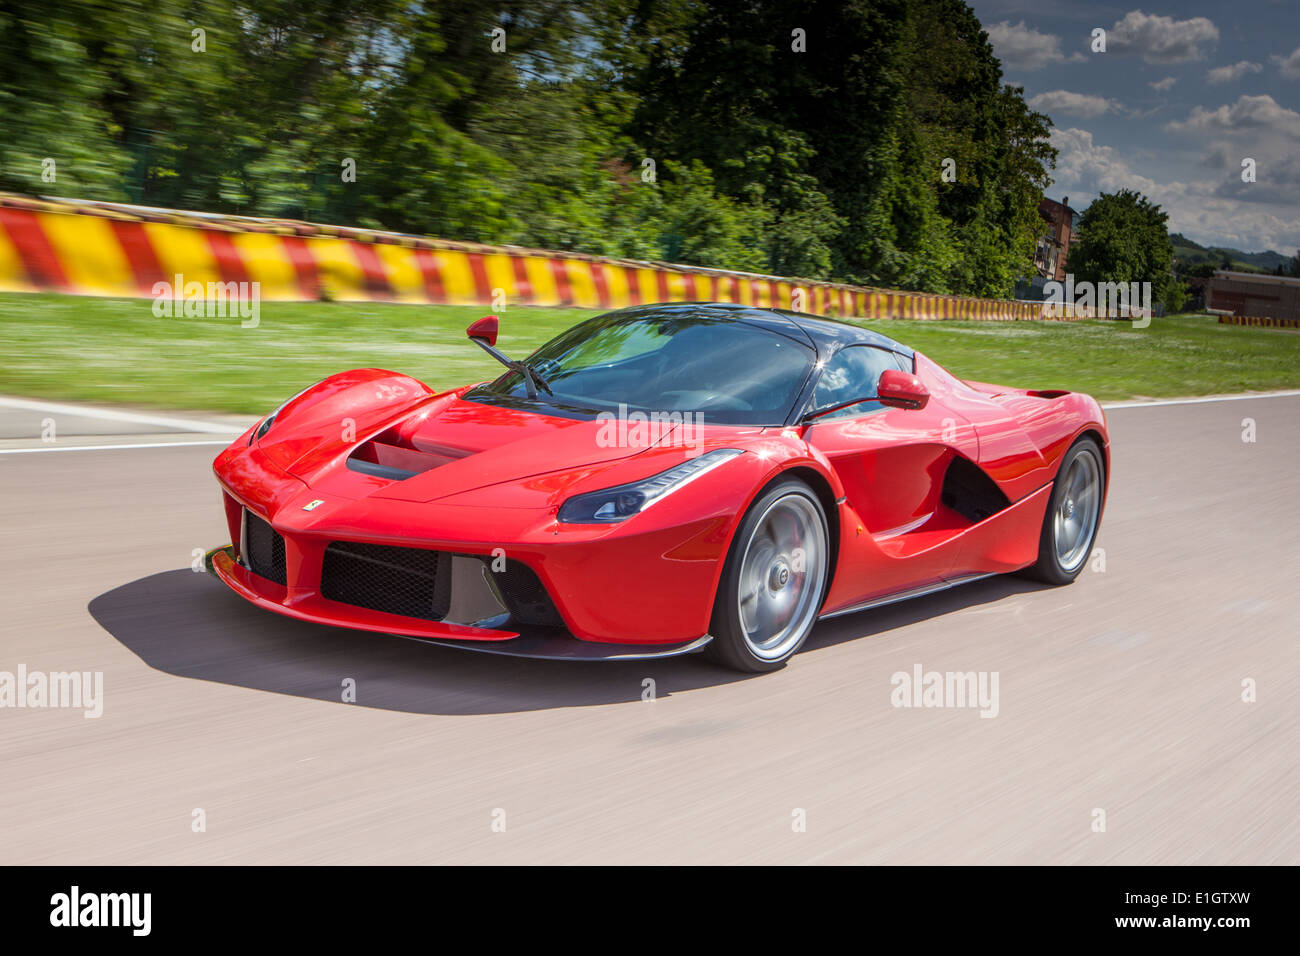 LaFerrari hybrid super car on Ferrari test track Maranello Italy Stock Photo